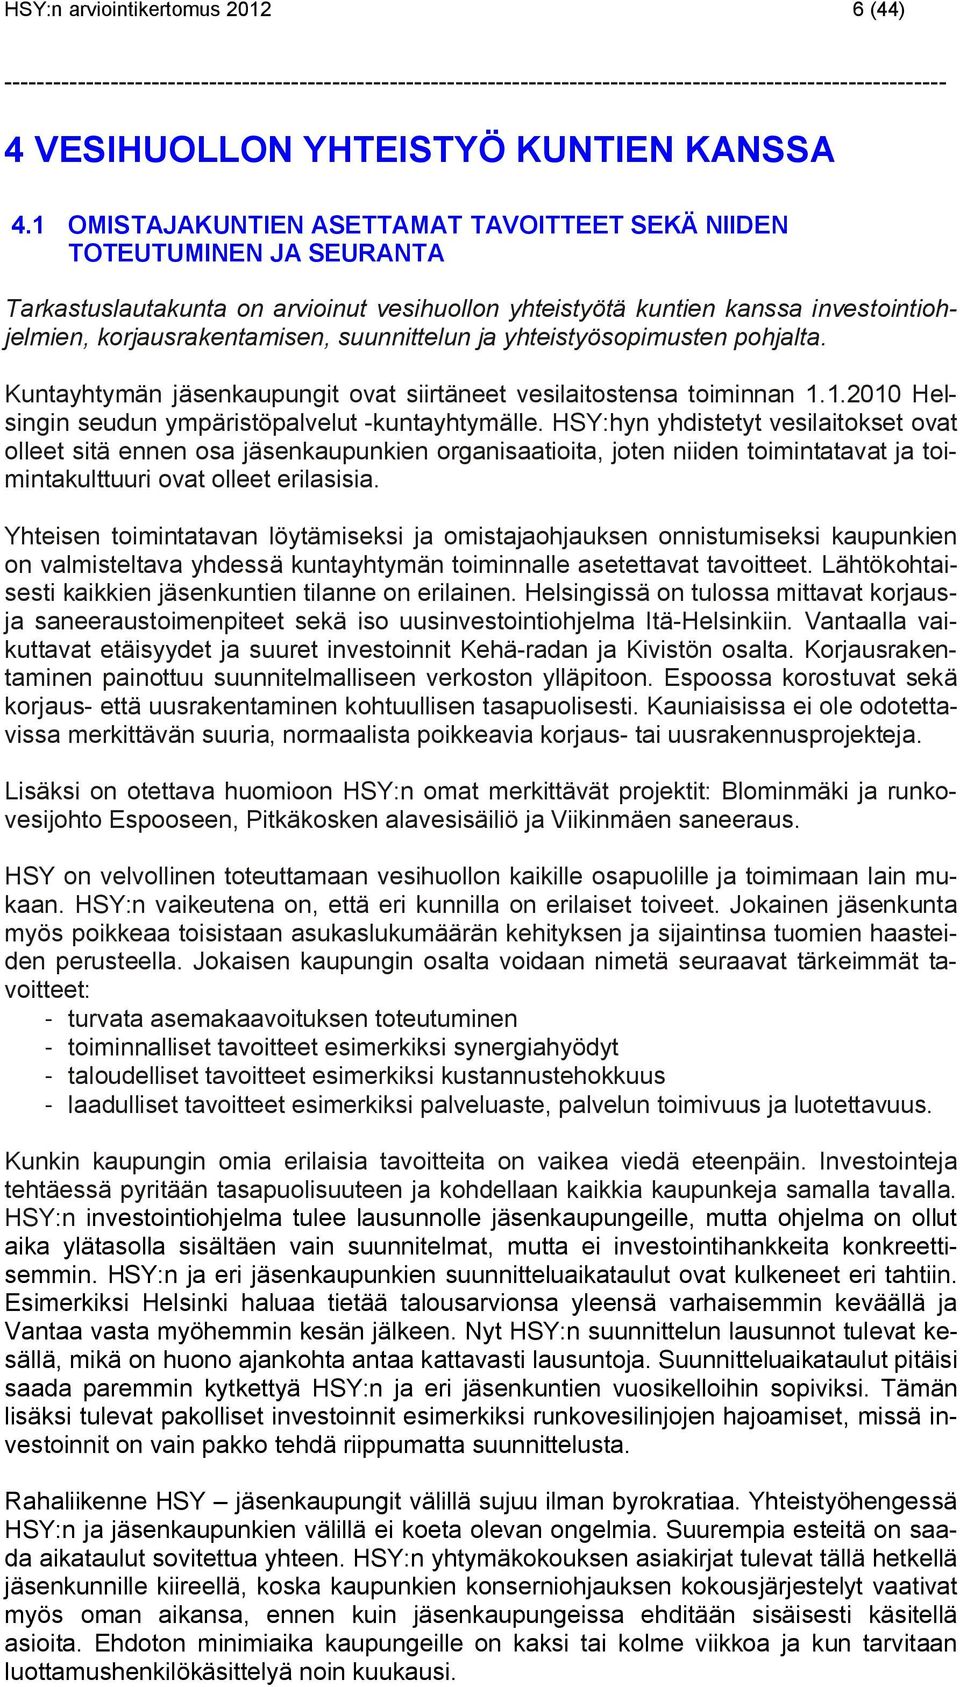 suunnittelun ja yhteistyösopimusten pohjalta. Kuntayhtymän jäsenkaupungit ovat siirtäneet vesilaitostensa toiminnan 1.1.2010 Helsingin seudun ympäristöpalvelut -kuntayhtymälle.